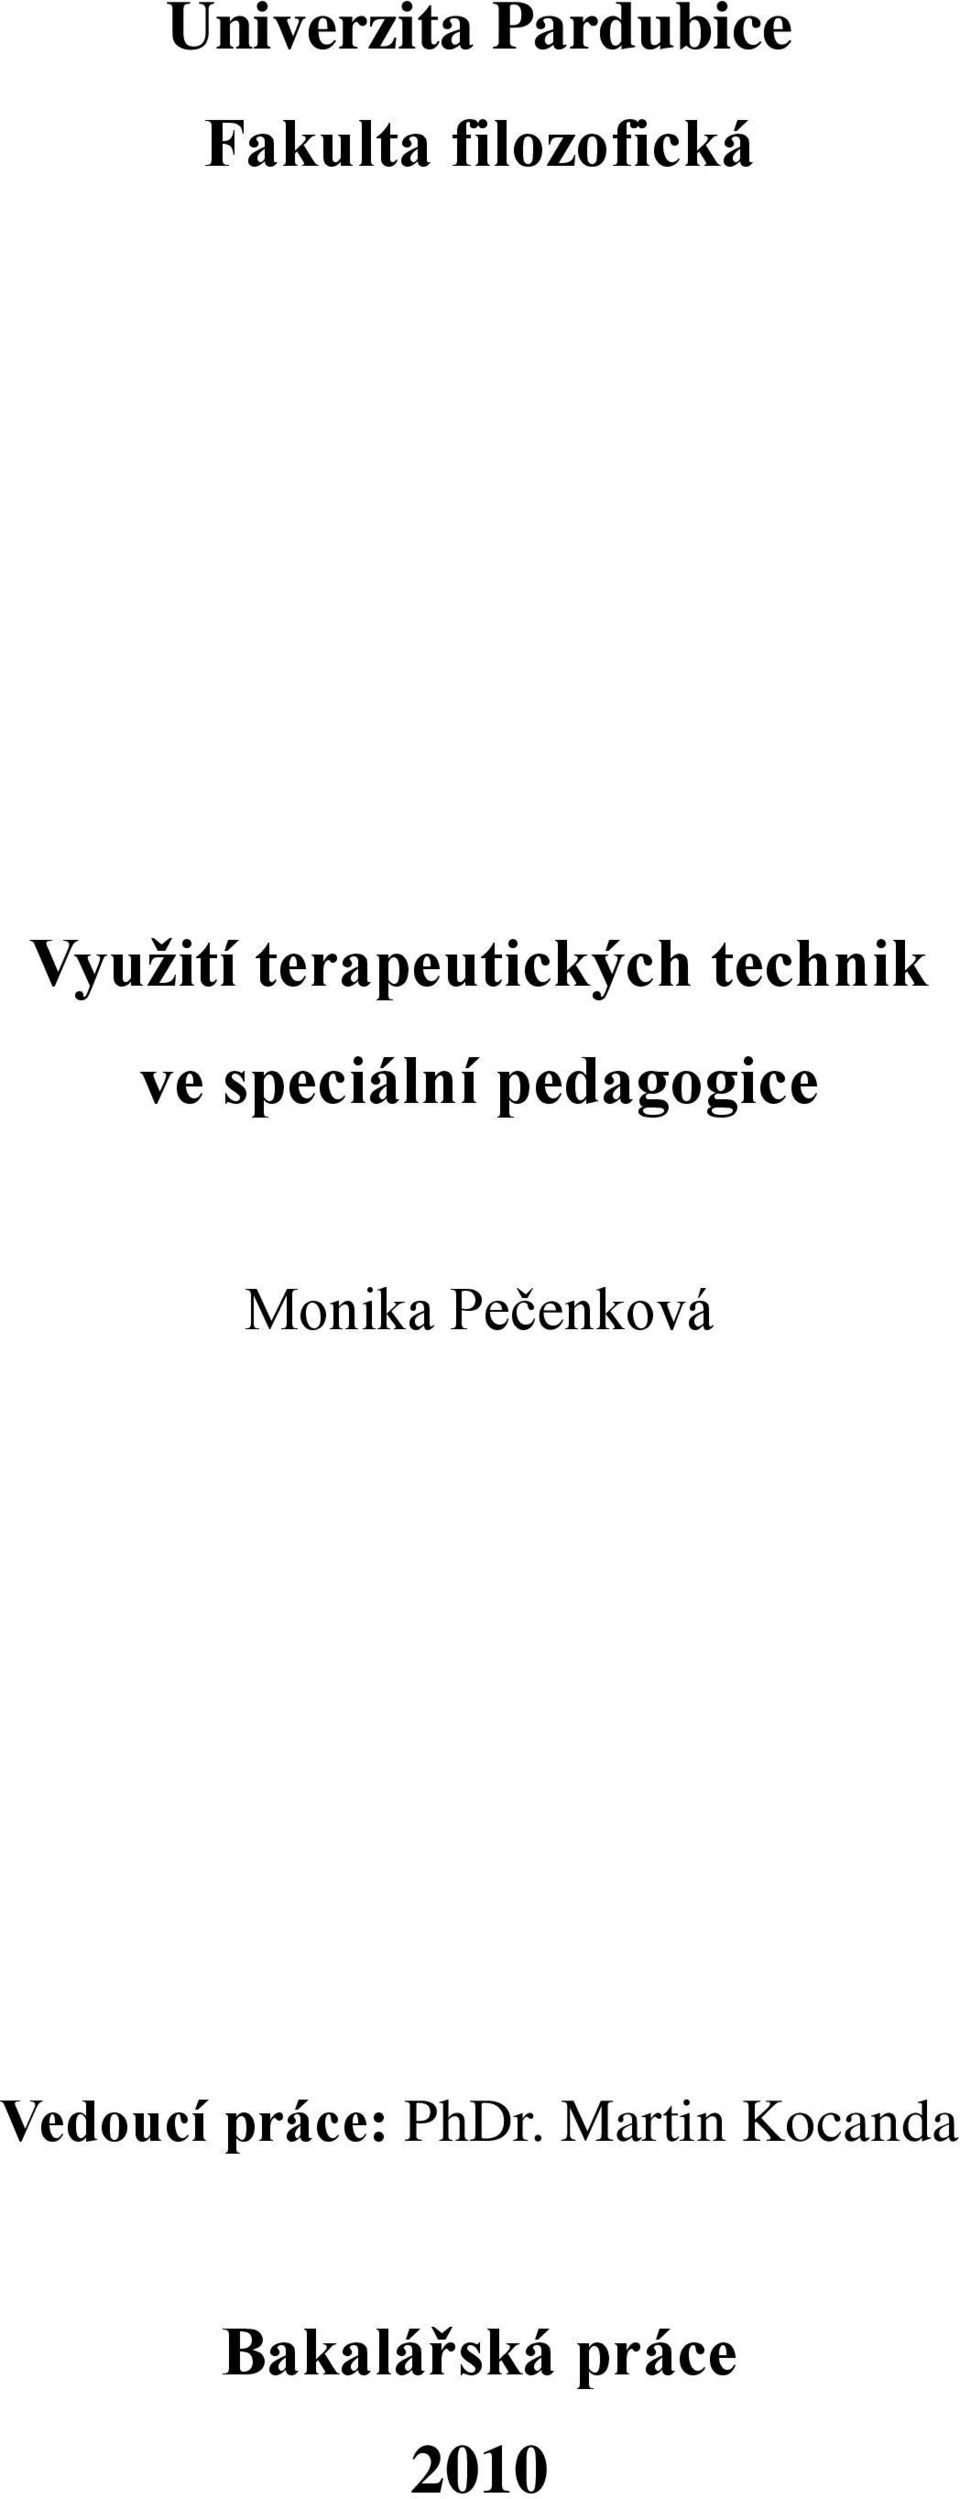 speciální pedagogice Monika Pečenková